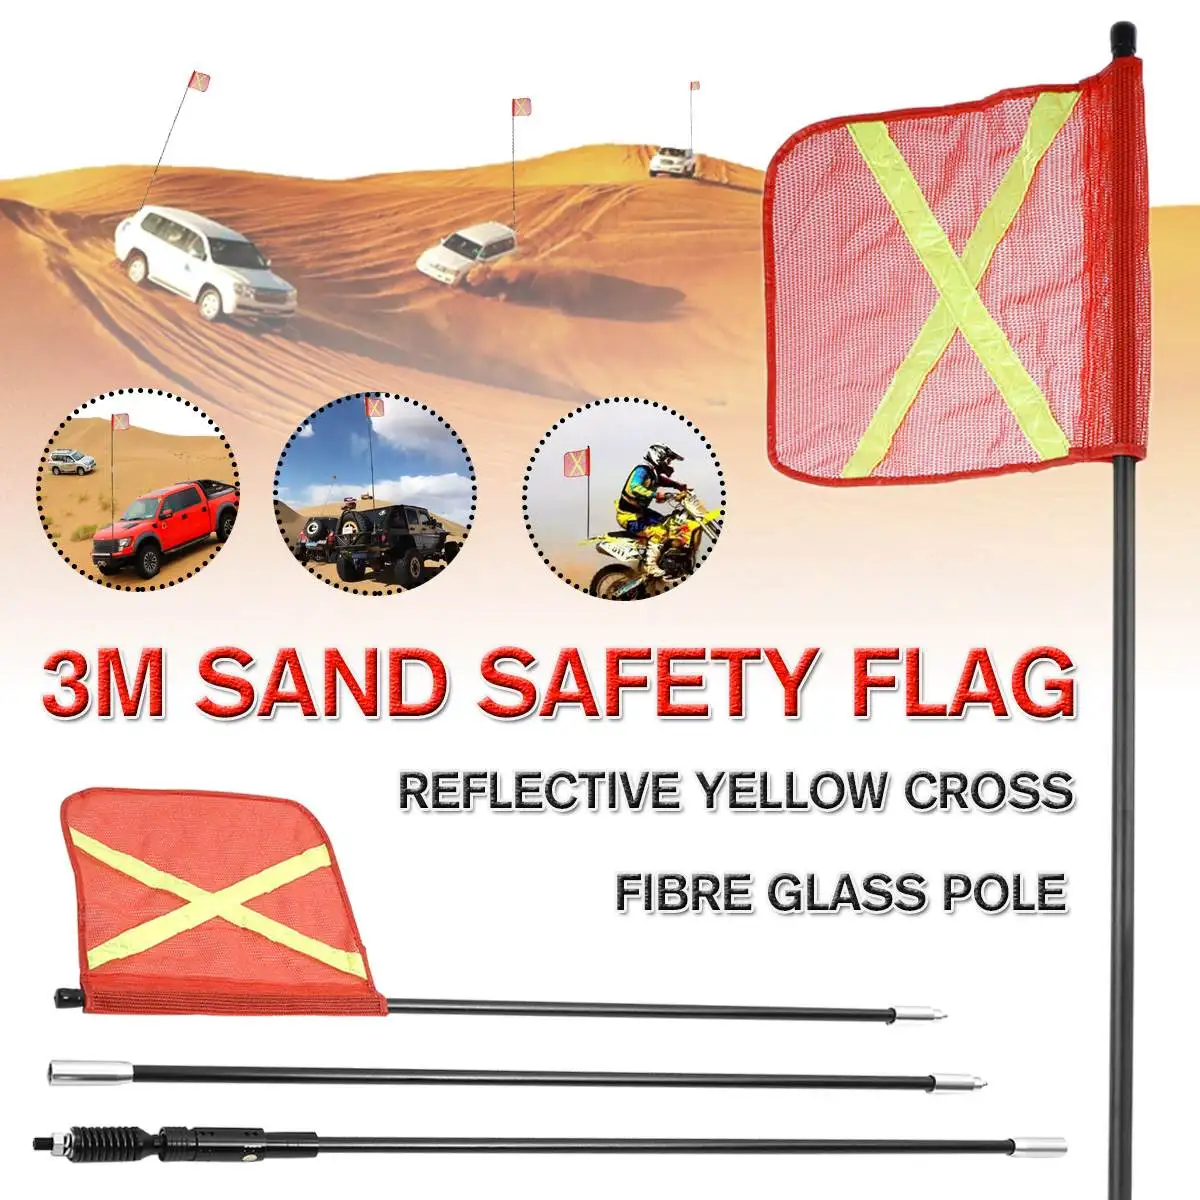 300 см автомобиля Предупреждение защитный флажок комплект флага песка для Симпсон пустыни горного защитный флажок для ATV грузовик для Jeep для песка рельсы